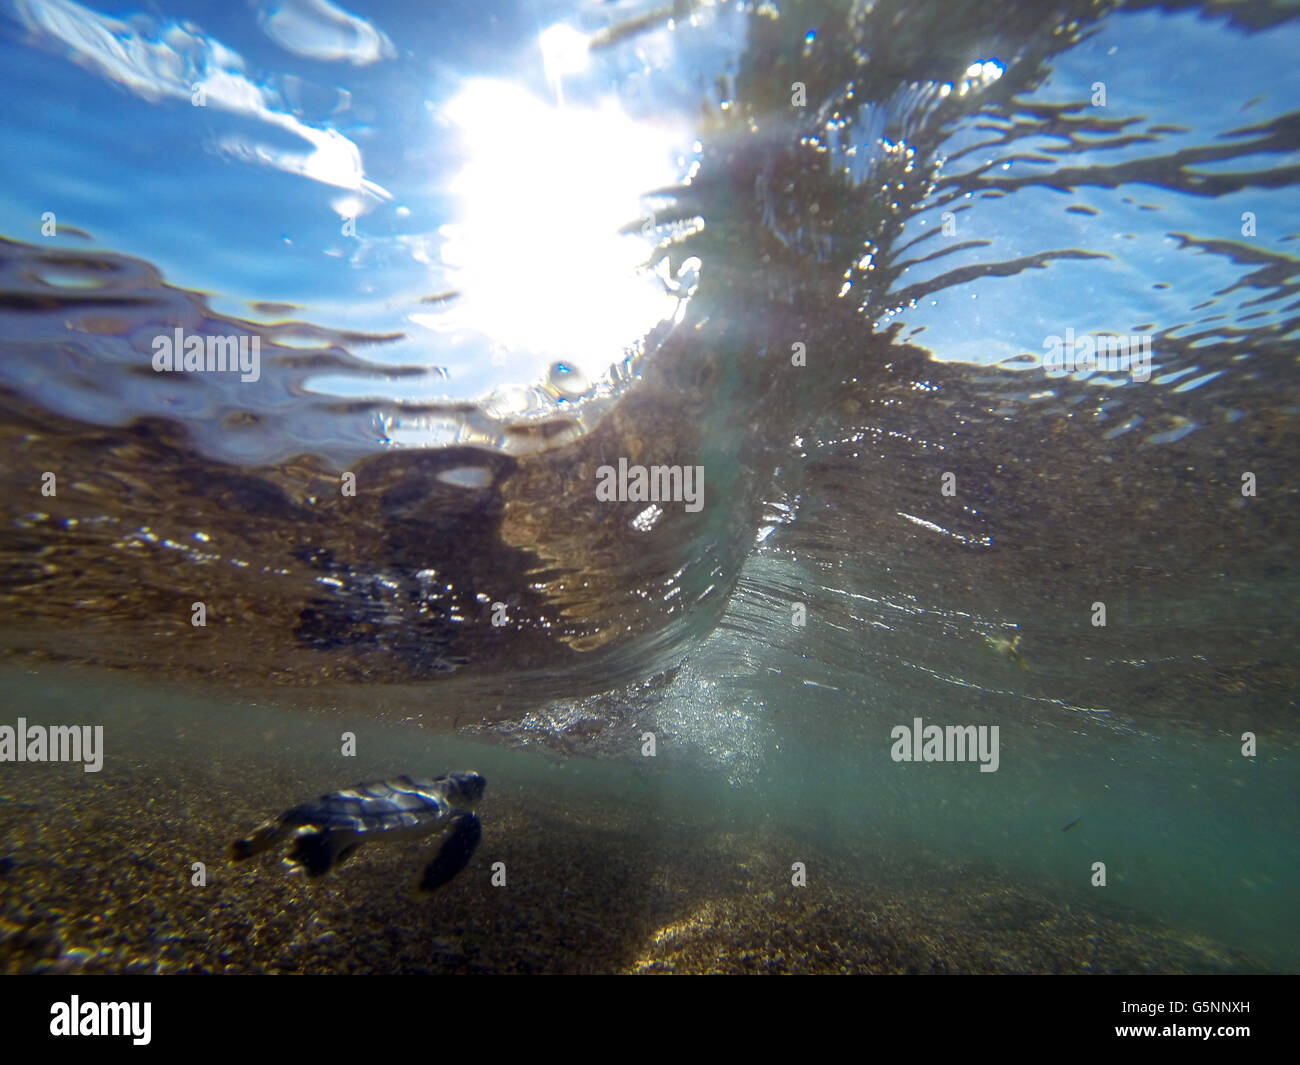 Les petites tortues tortue franche (Natator depressus) plongée sous première vague, région du Pilbara, Australie occidentale Banque D'Images